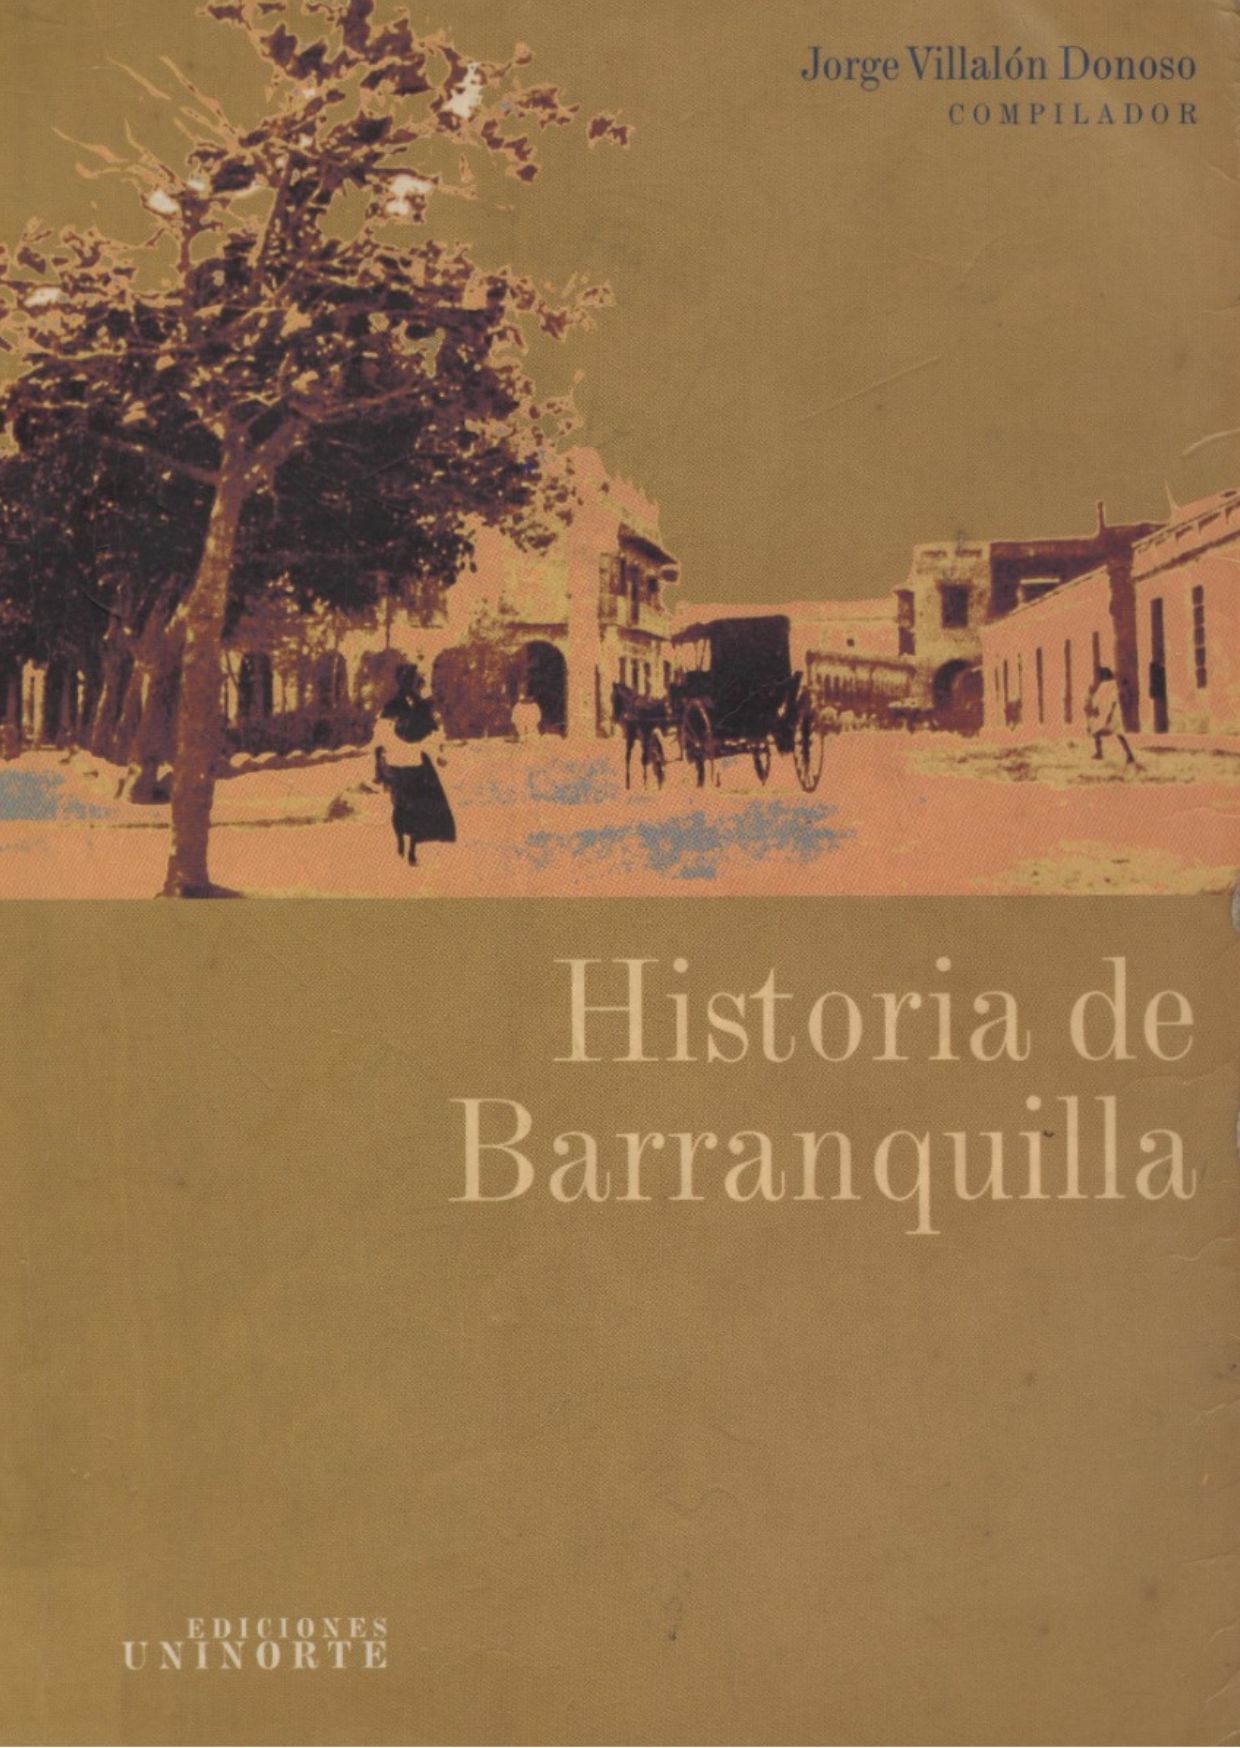 Esta es una foto de la portada del libro Historia de Barranquilla de Jorge Villalón Donoso